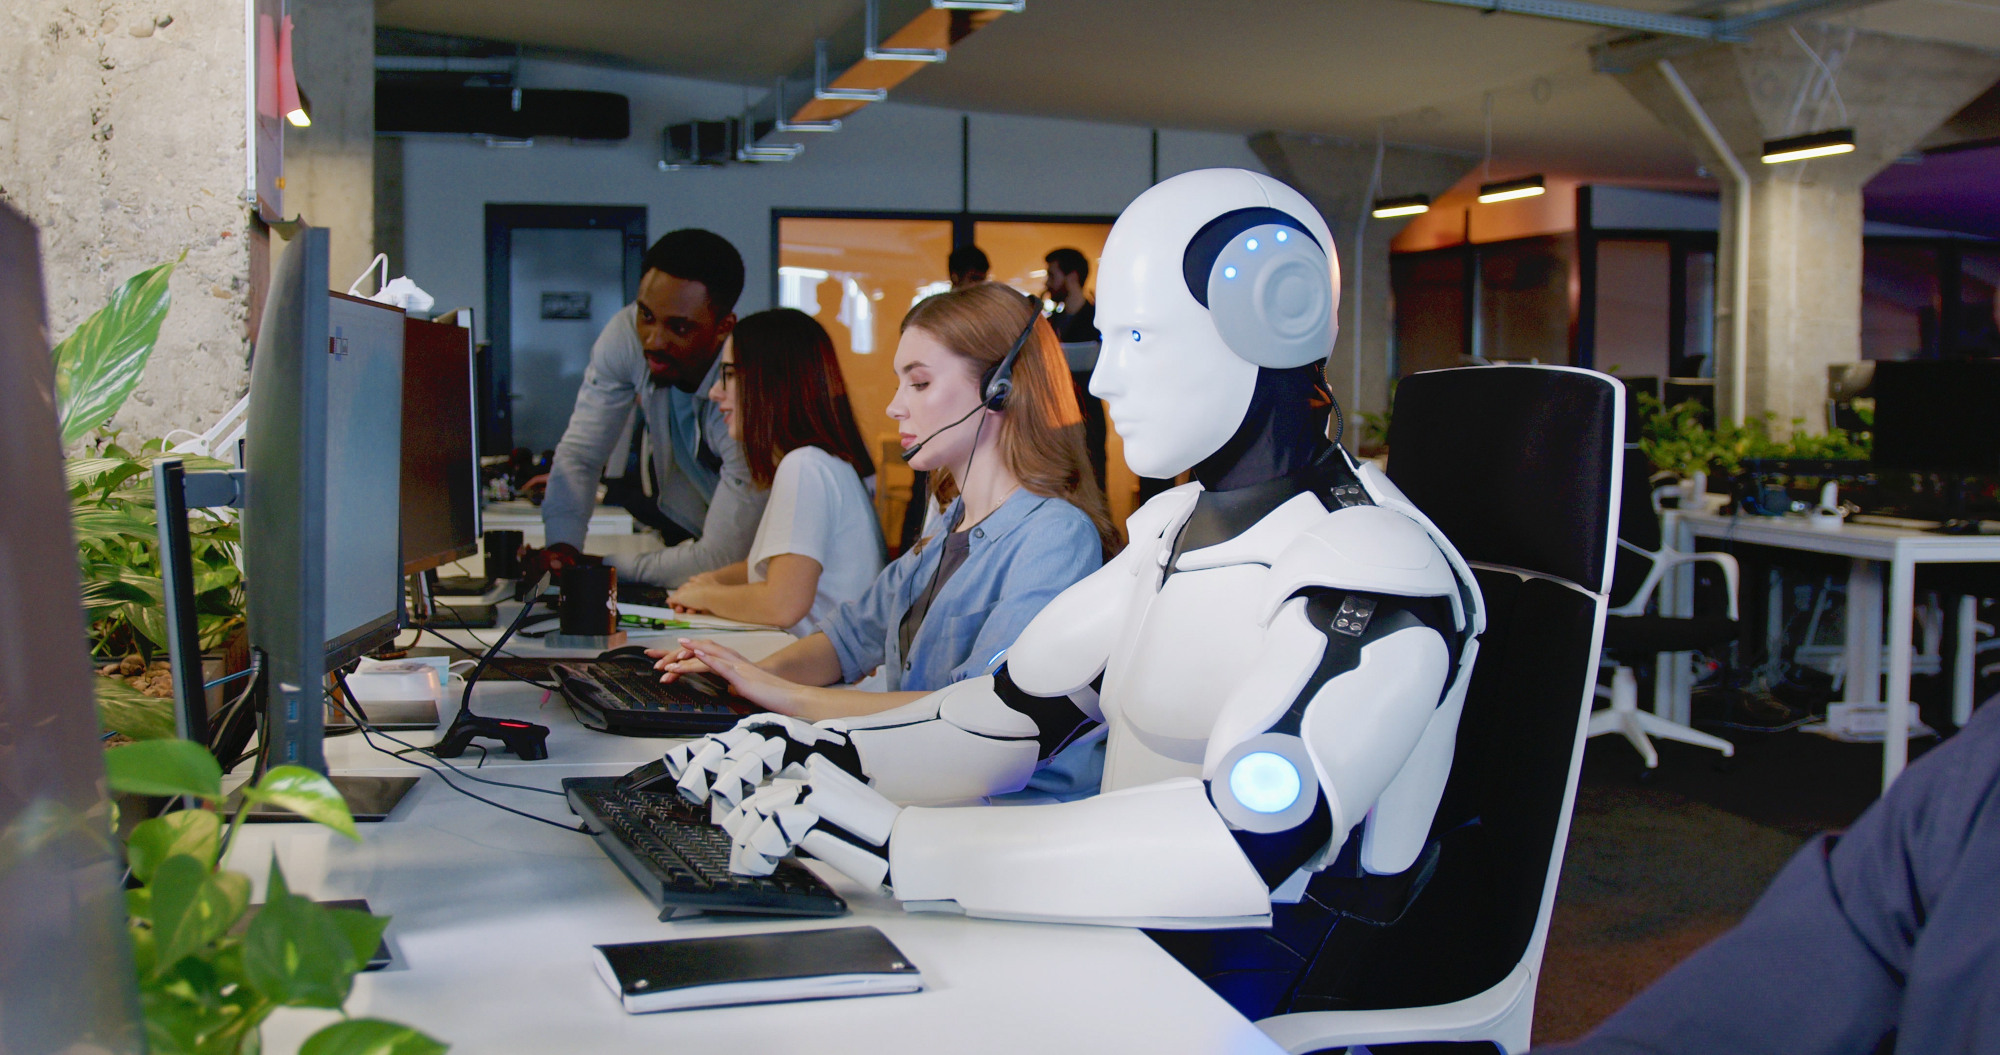 Ein Roboter arbeitet in einem Büro am Computer, daneben Personen am Computer